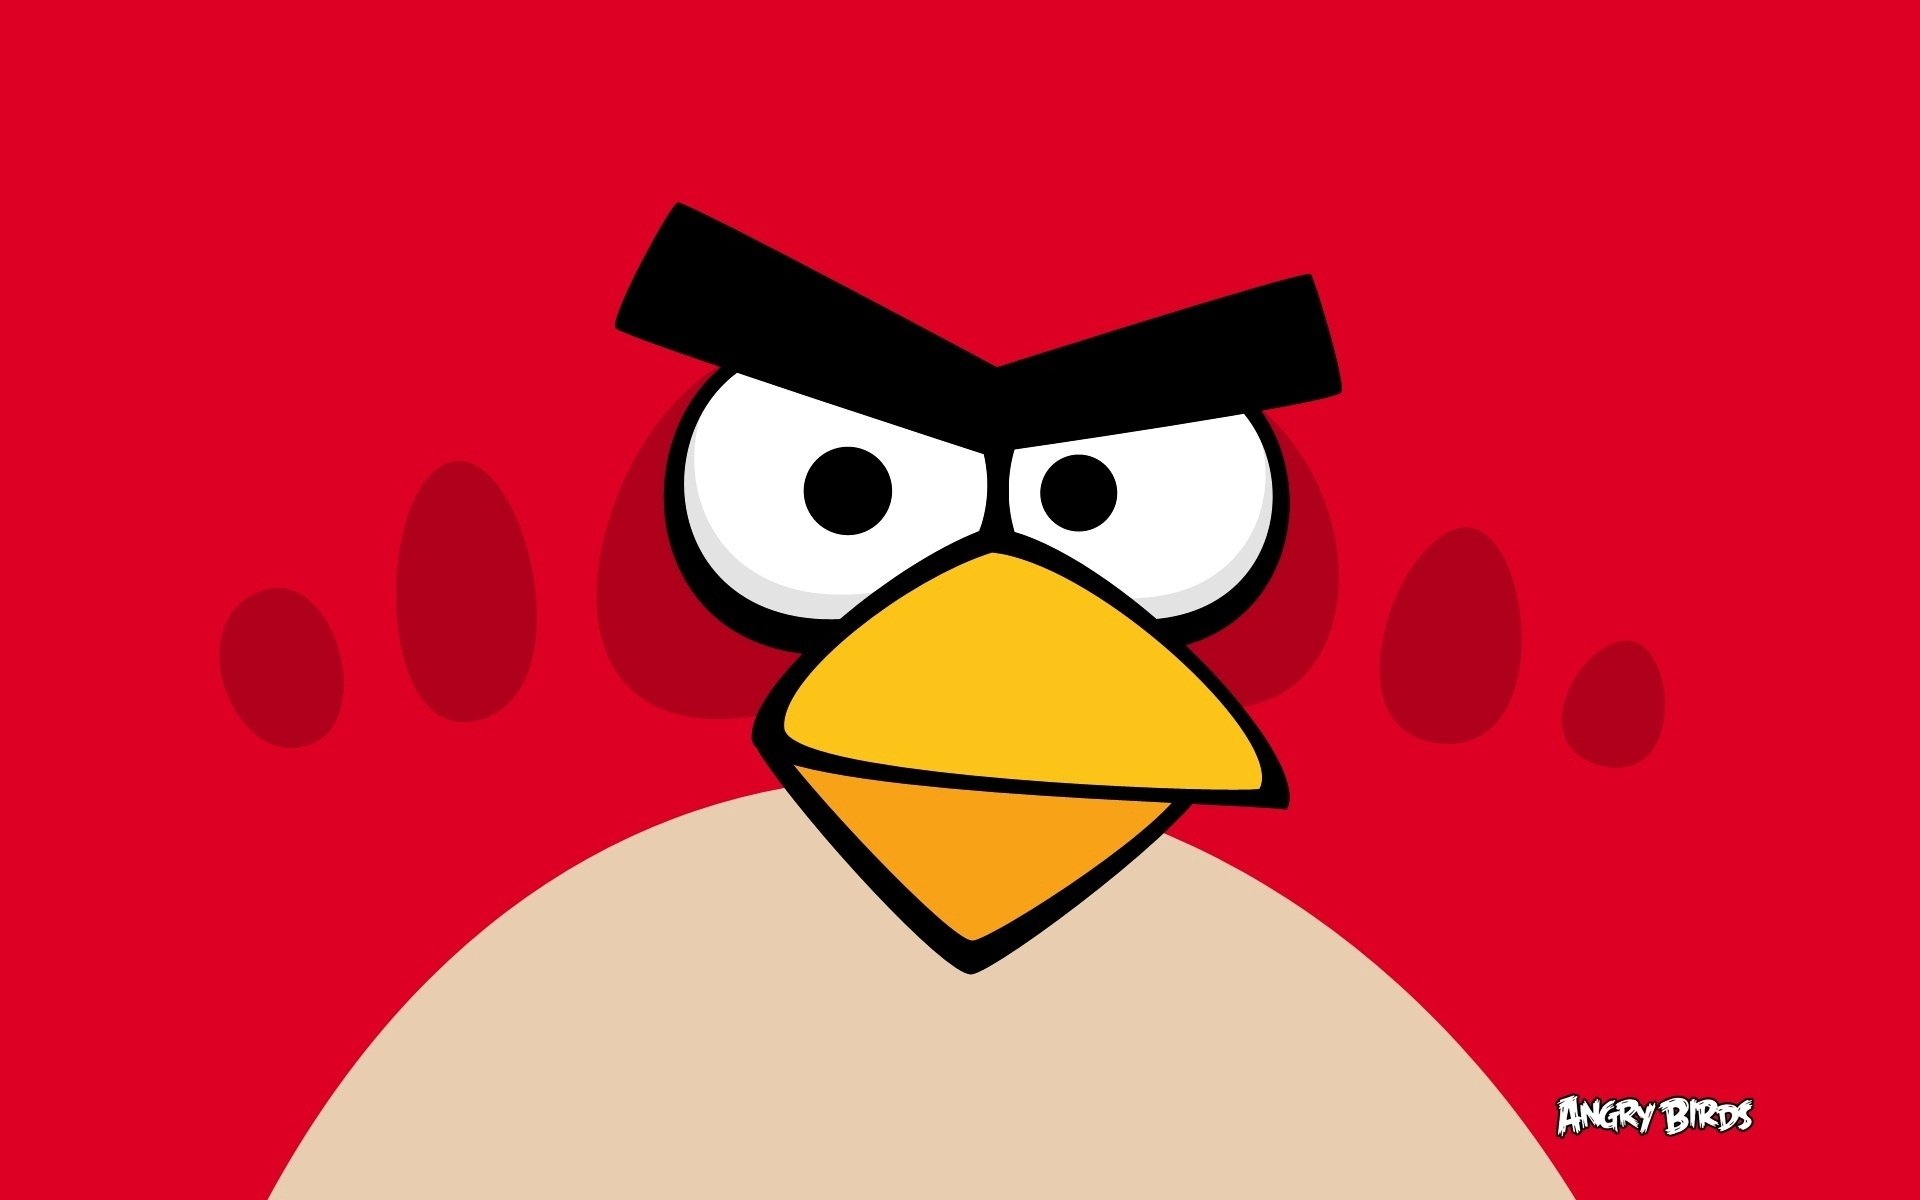 lucu gambar angry bird